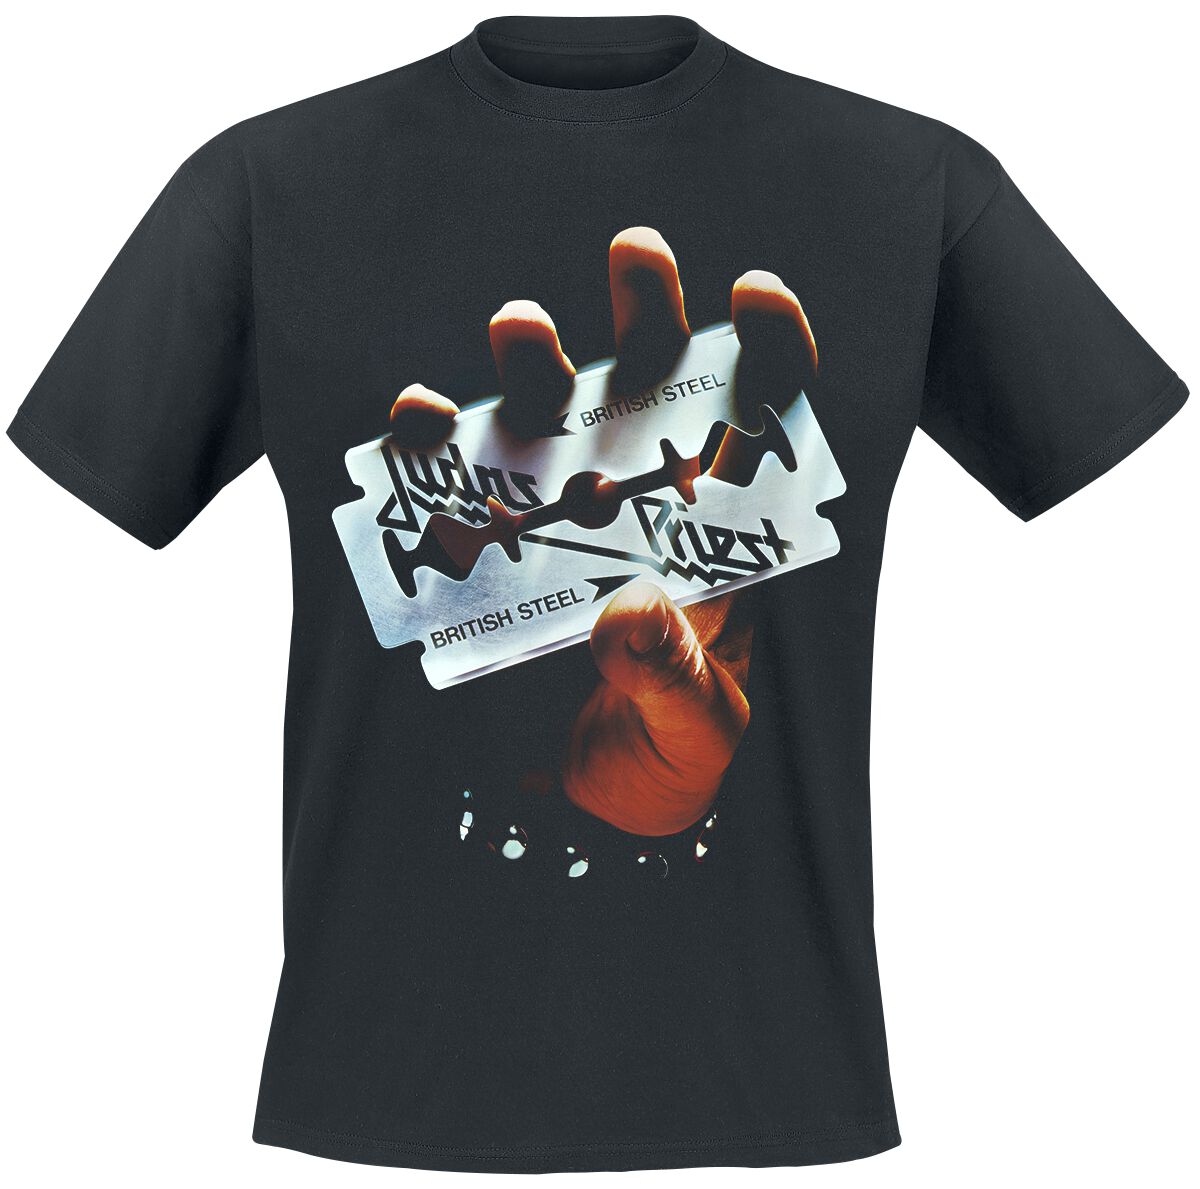 Image of Judas Priest British Steel Album Tracklist T-Shirt schwarz